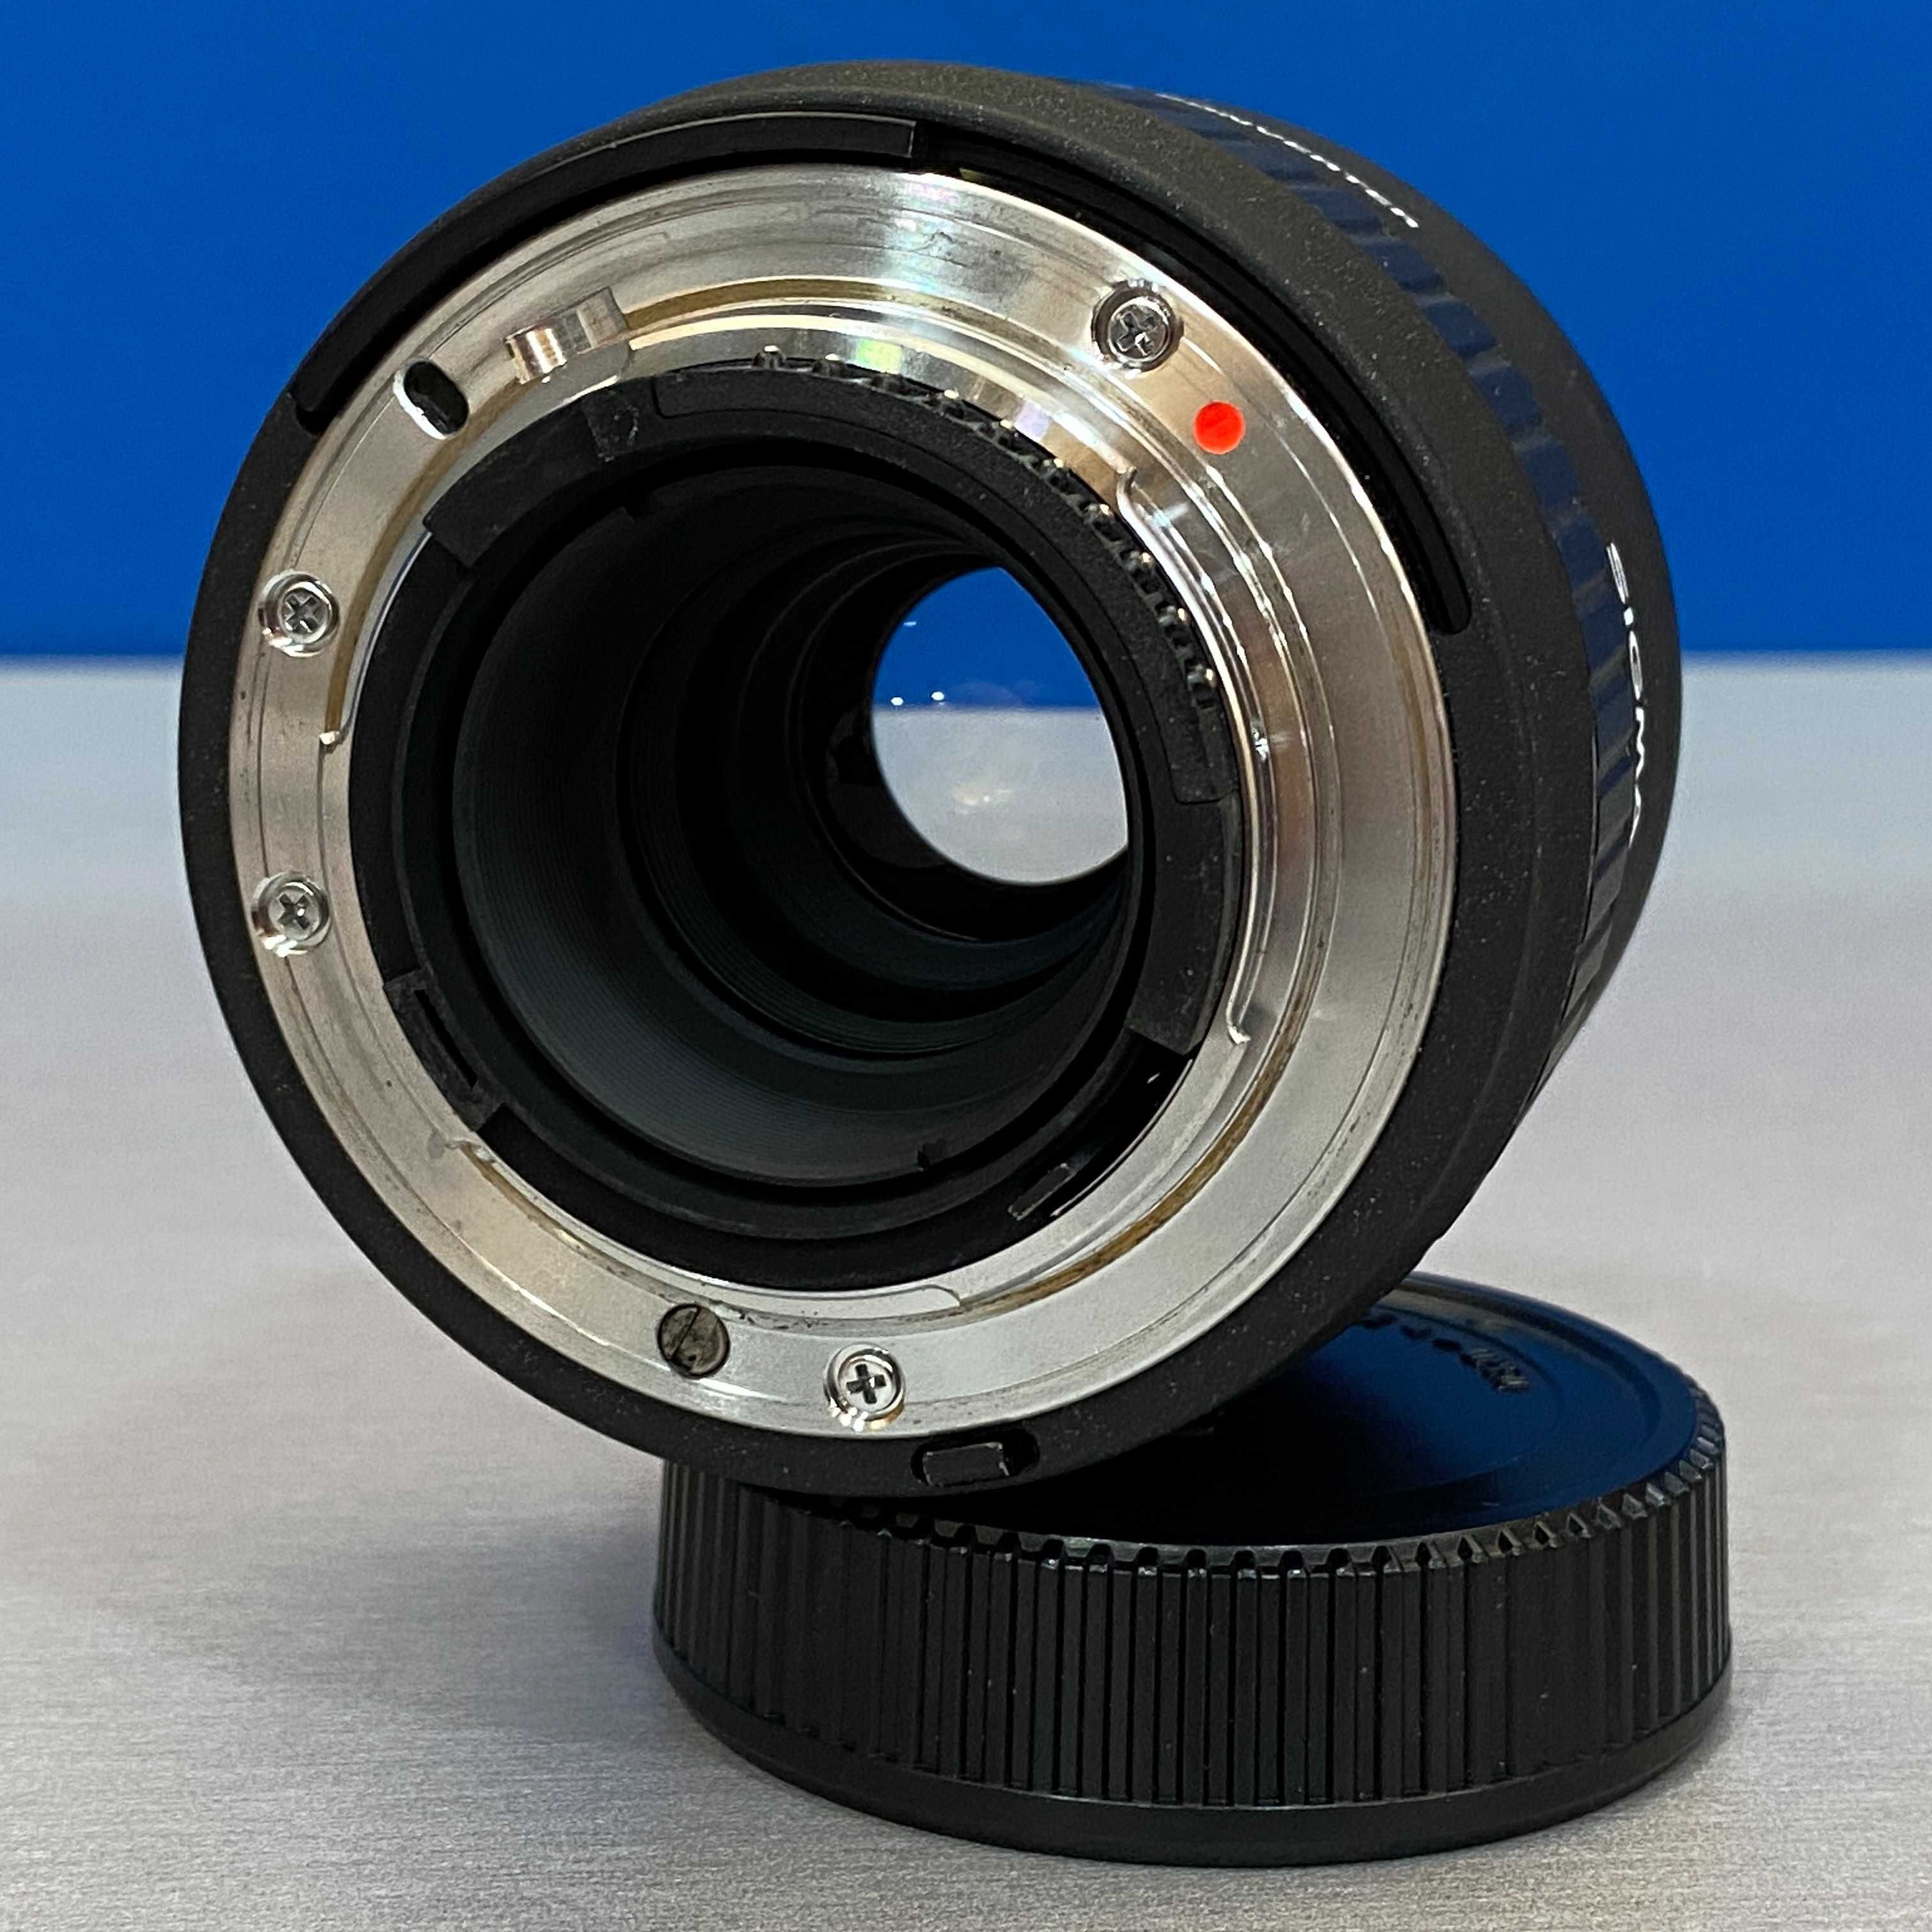 Sigma APO Tele Converter 2x EX (Nikon)